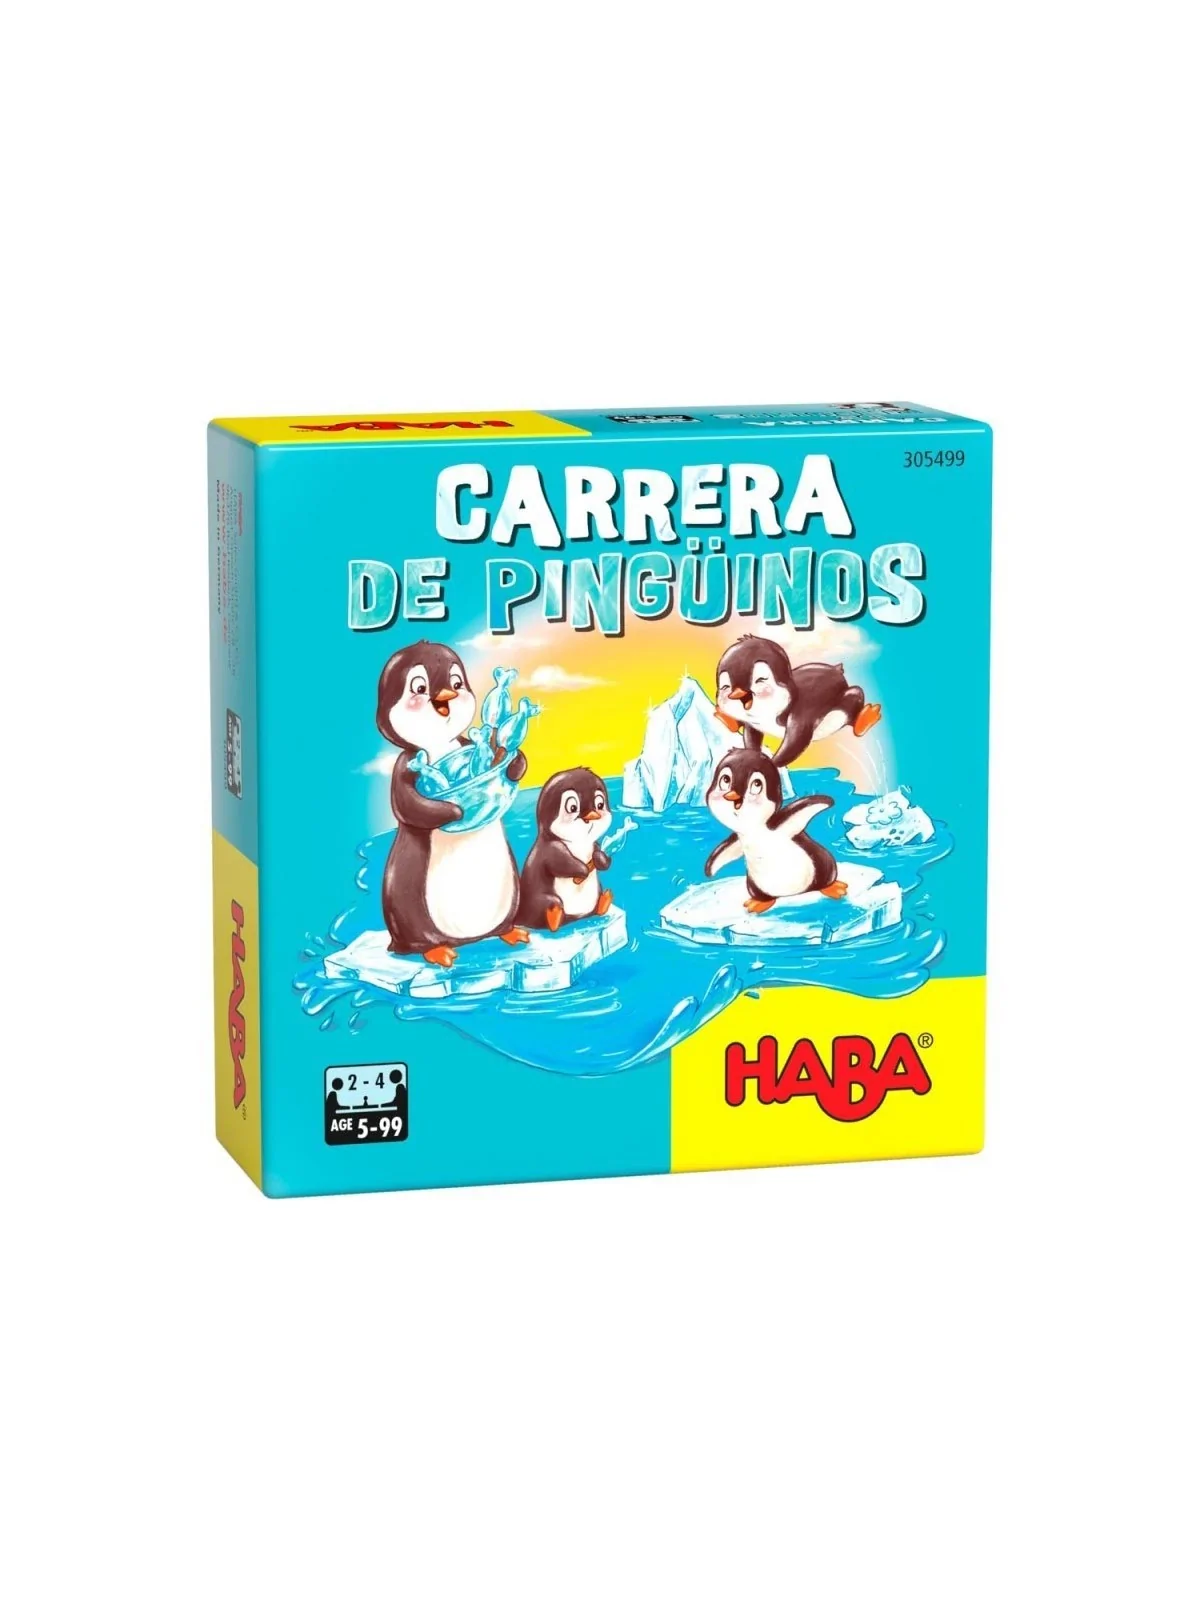 Comprar Carrera de Pingüinos barato al mejor precio 6,29 € de Haba